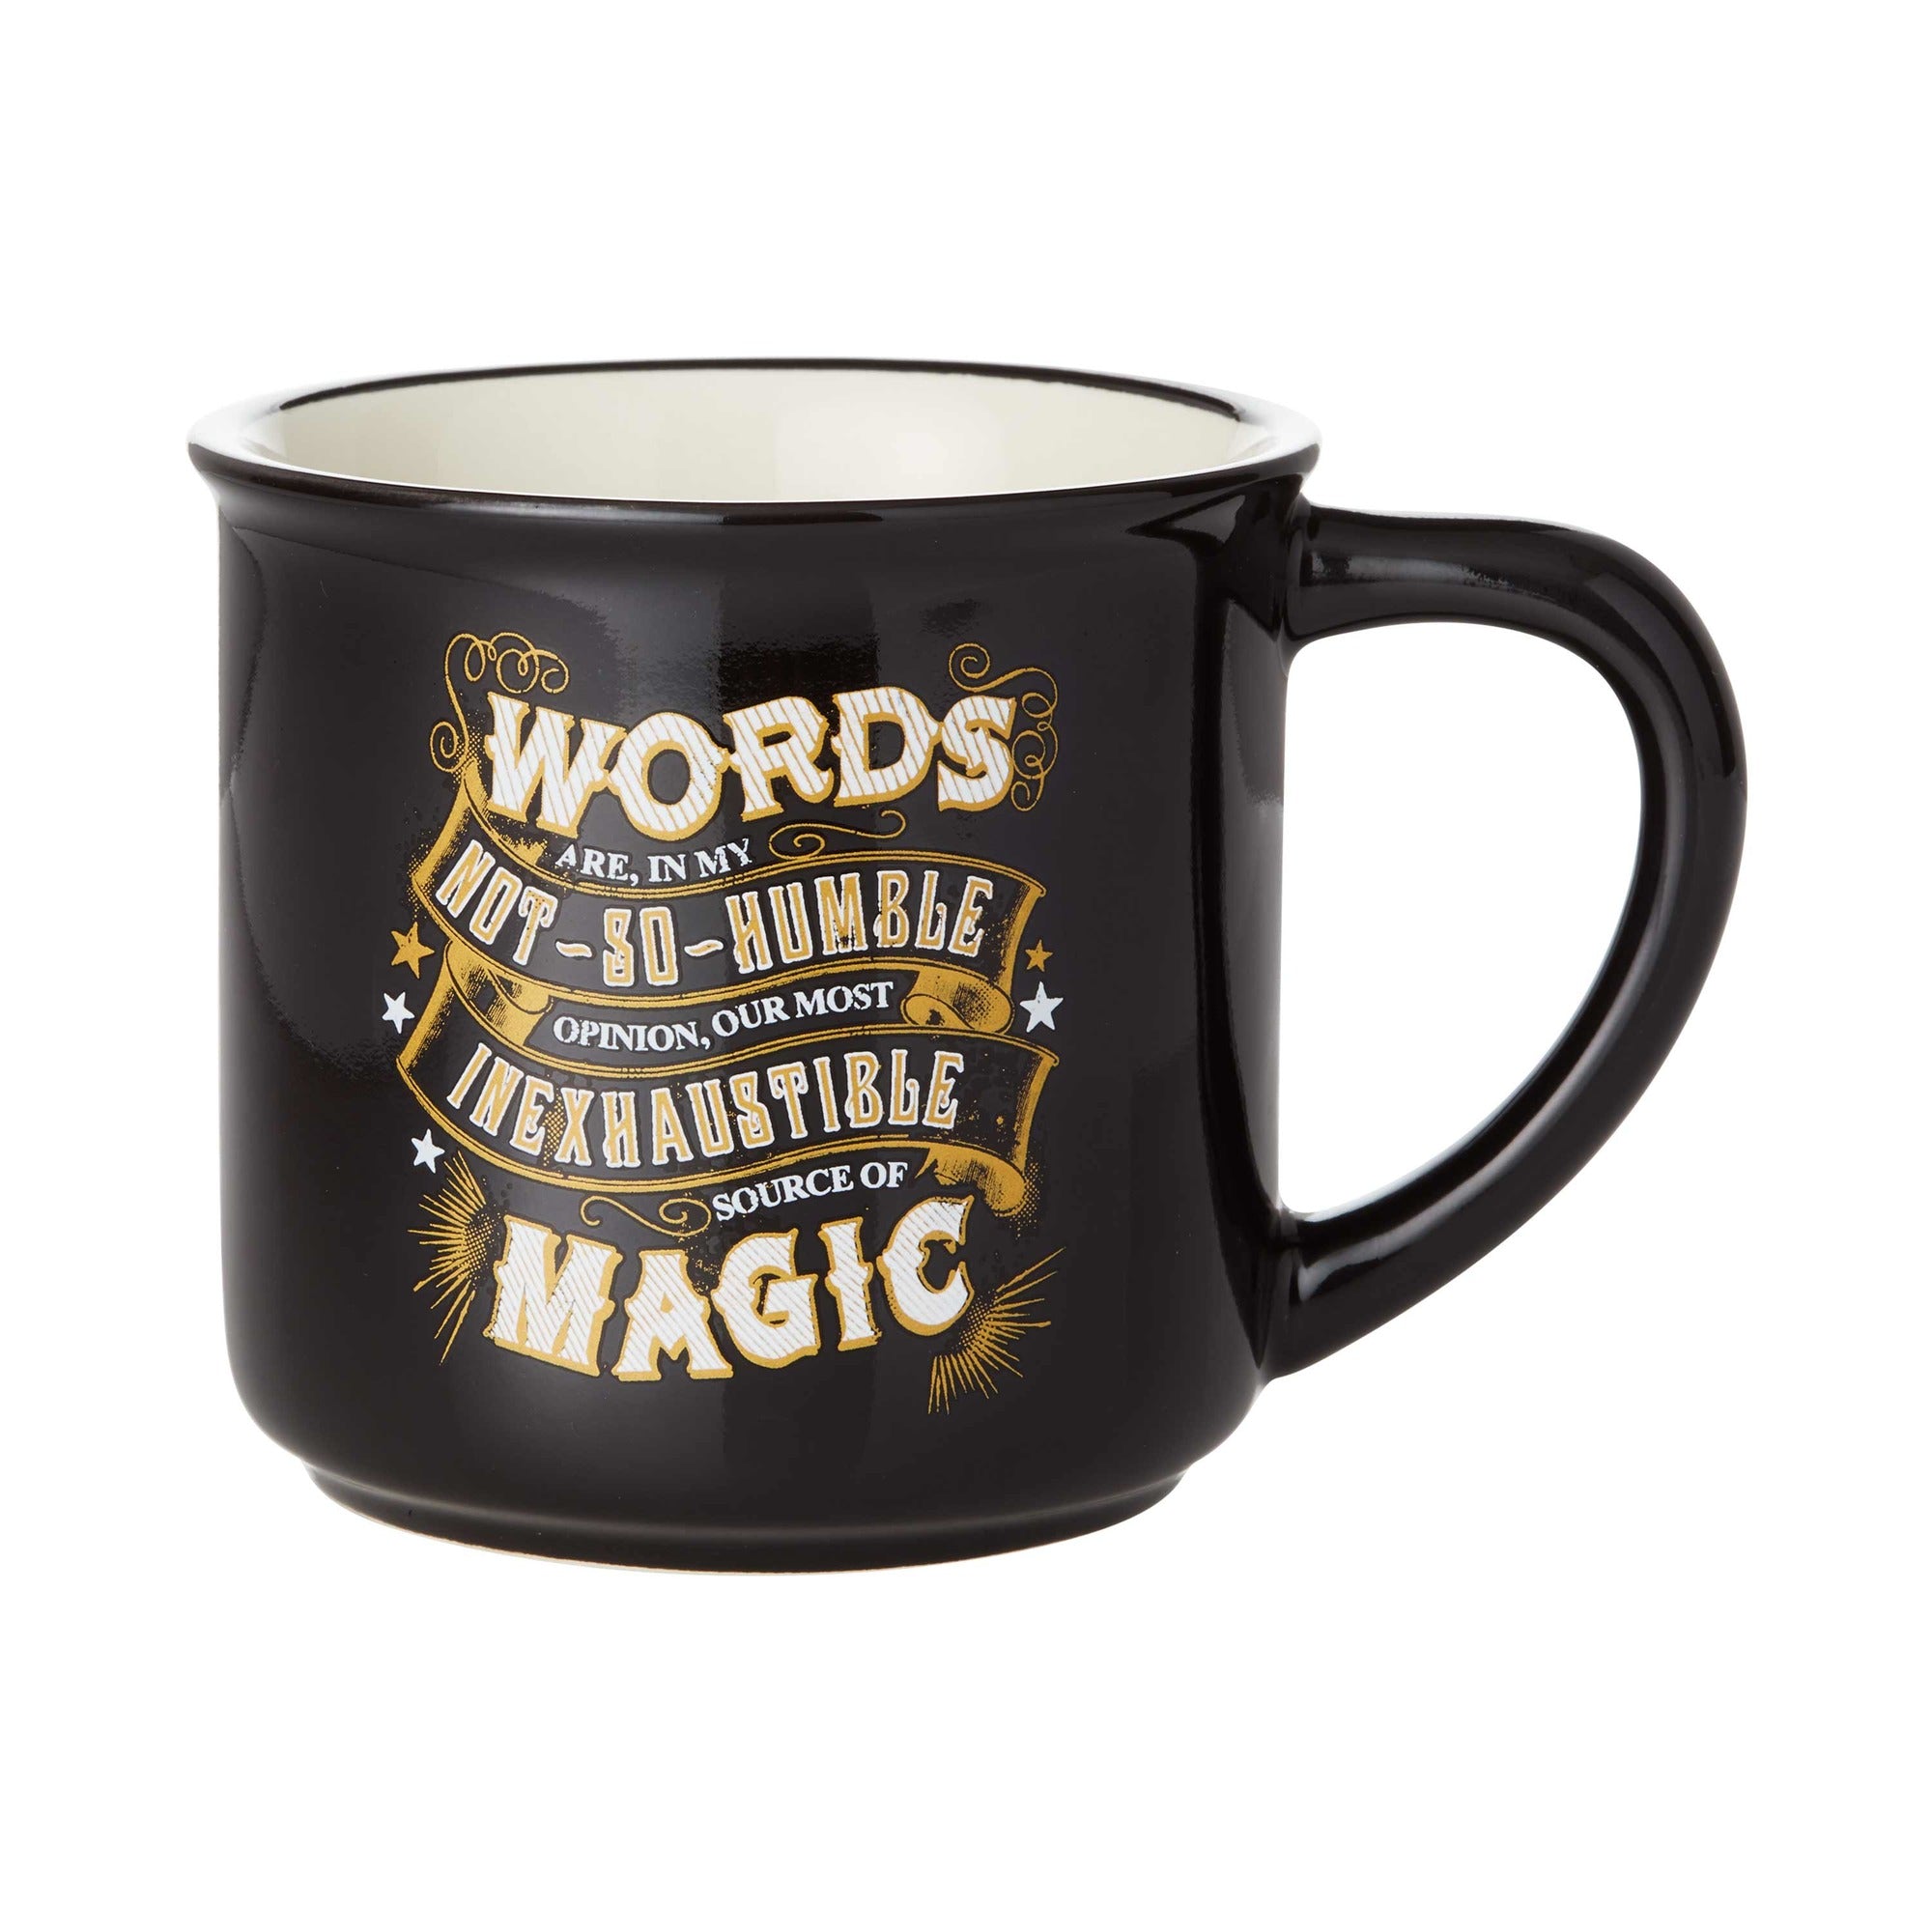 Mug Harry Potter - Boutique Harry Potter